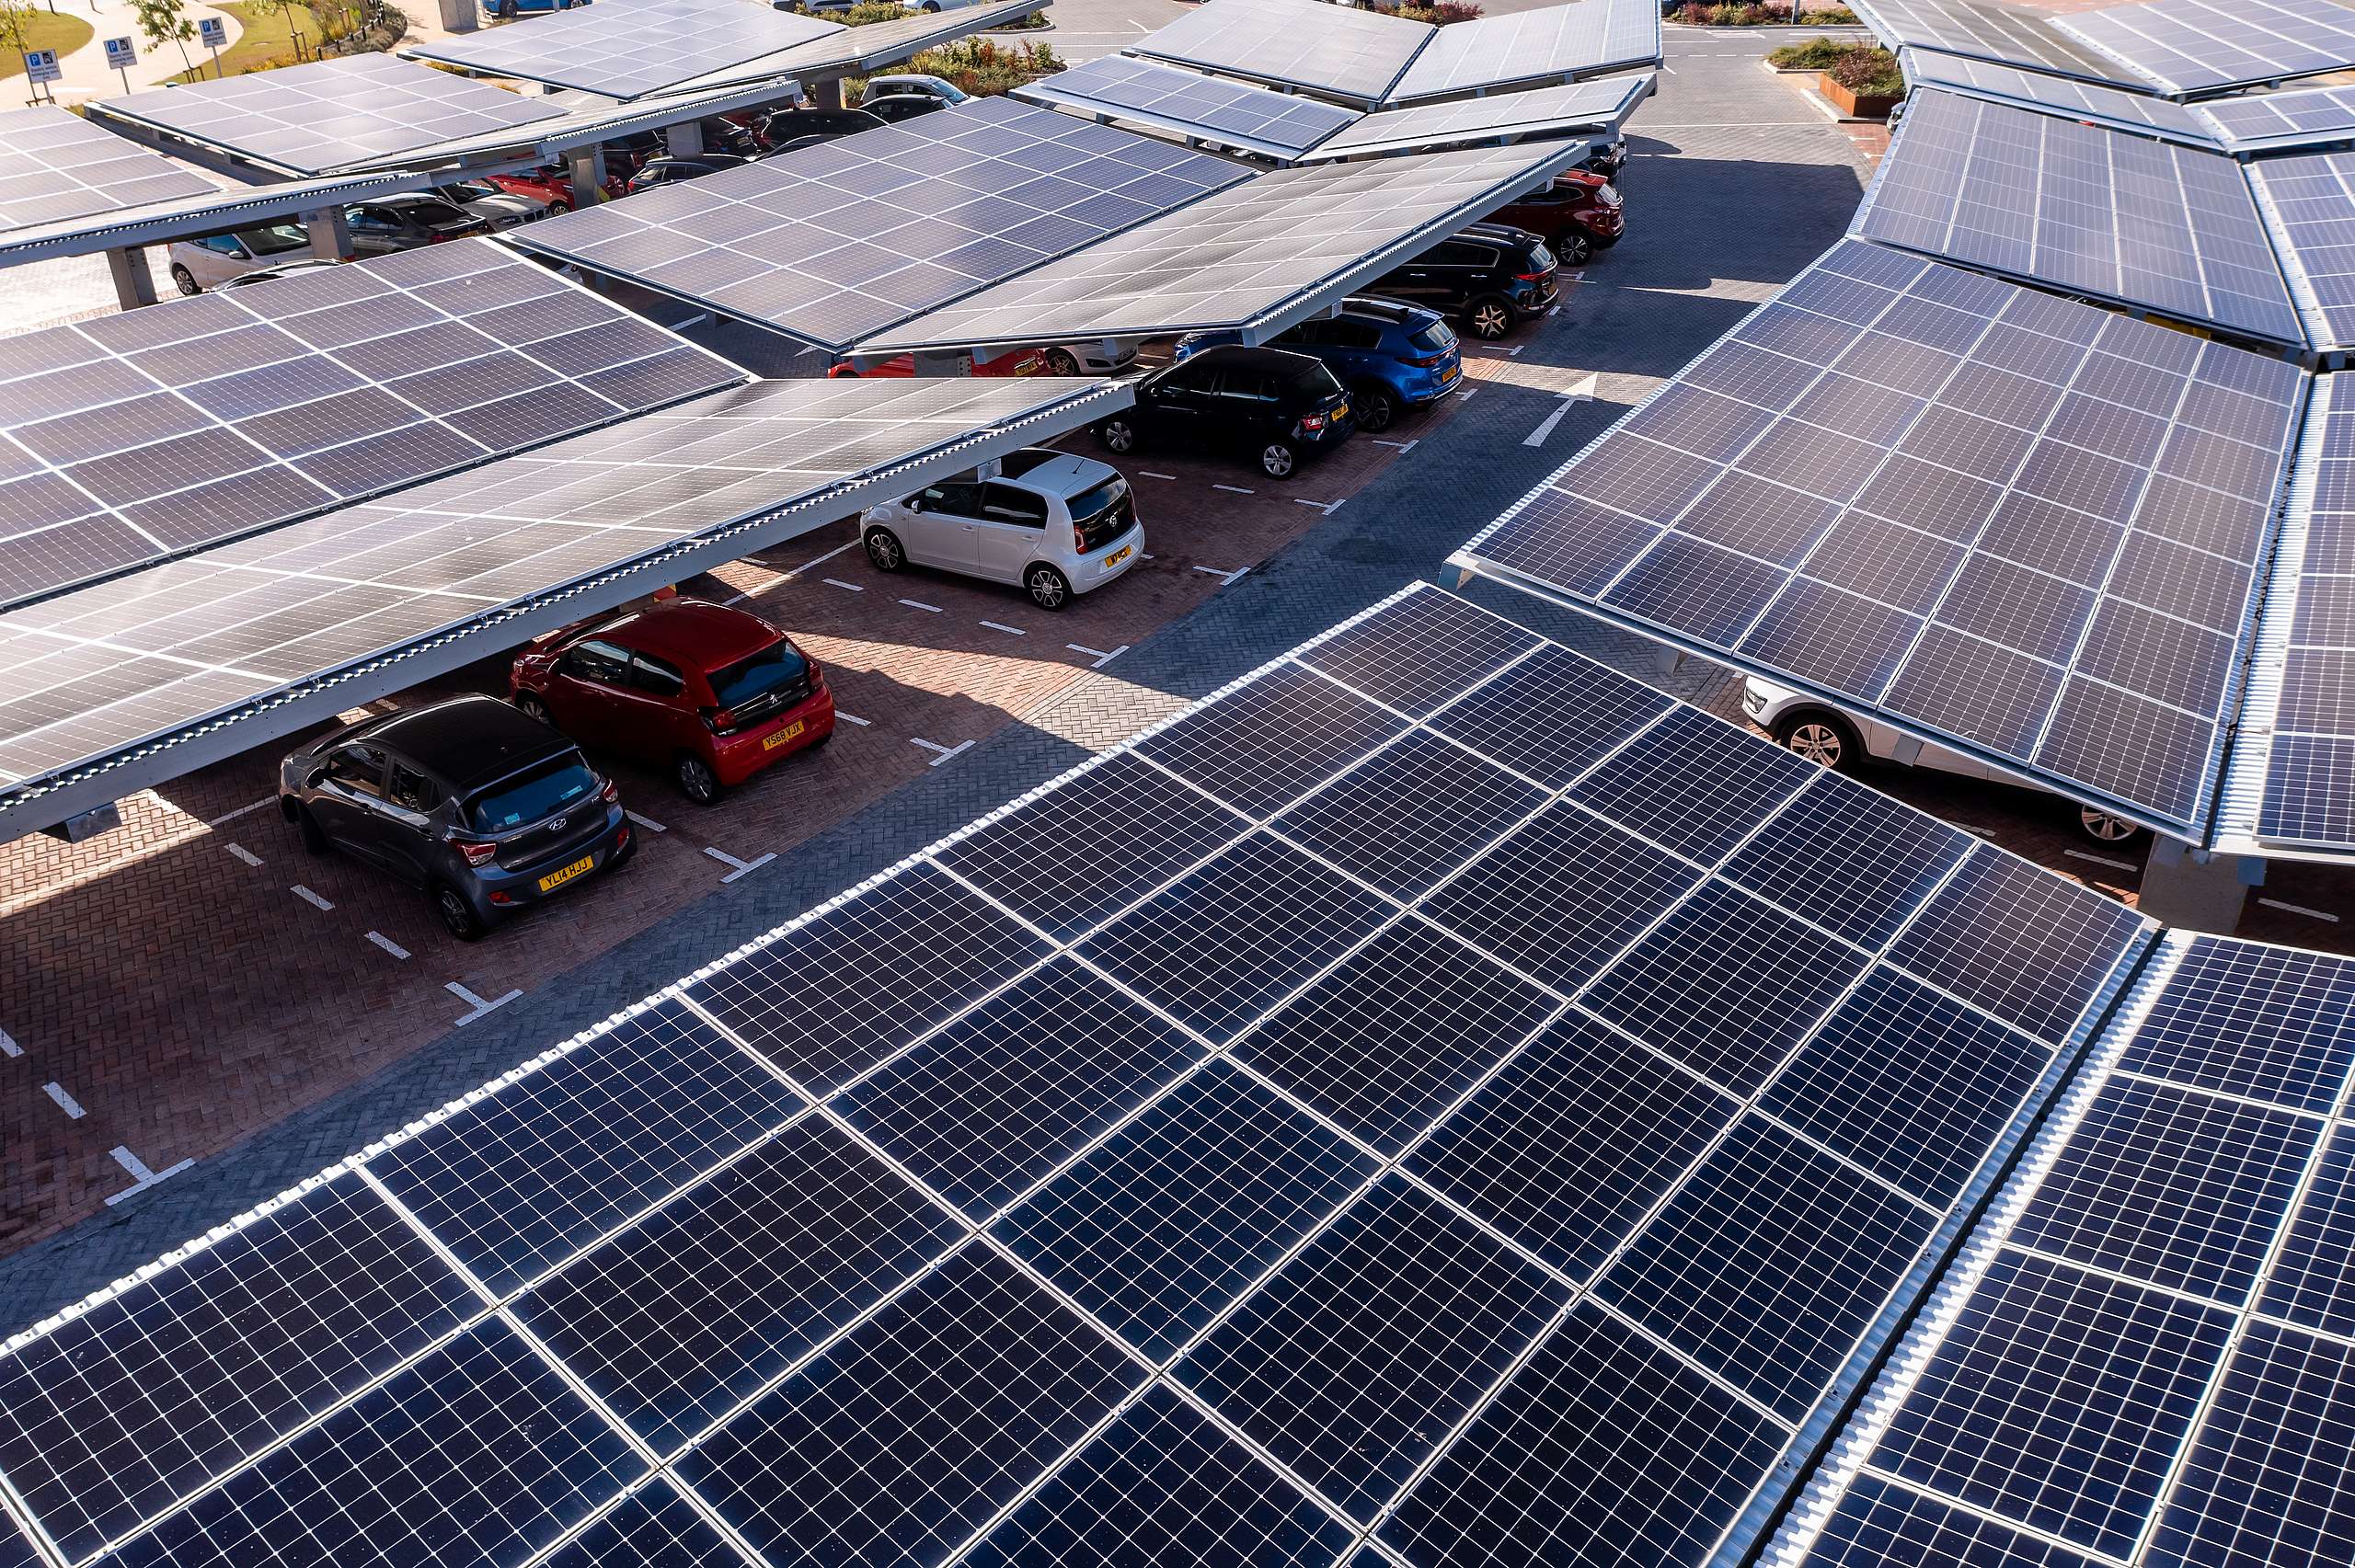 Duurzame energieopwekking voor je bedrijf - financieren van zonnepanelen door lease